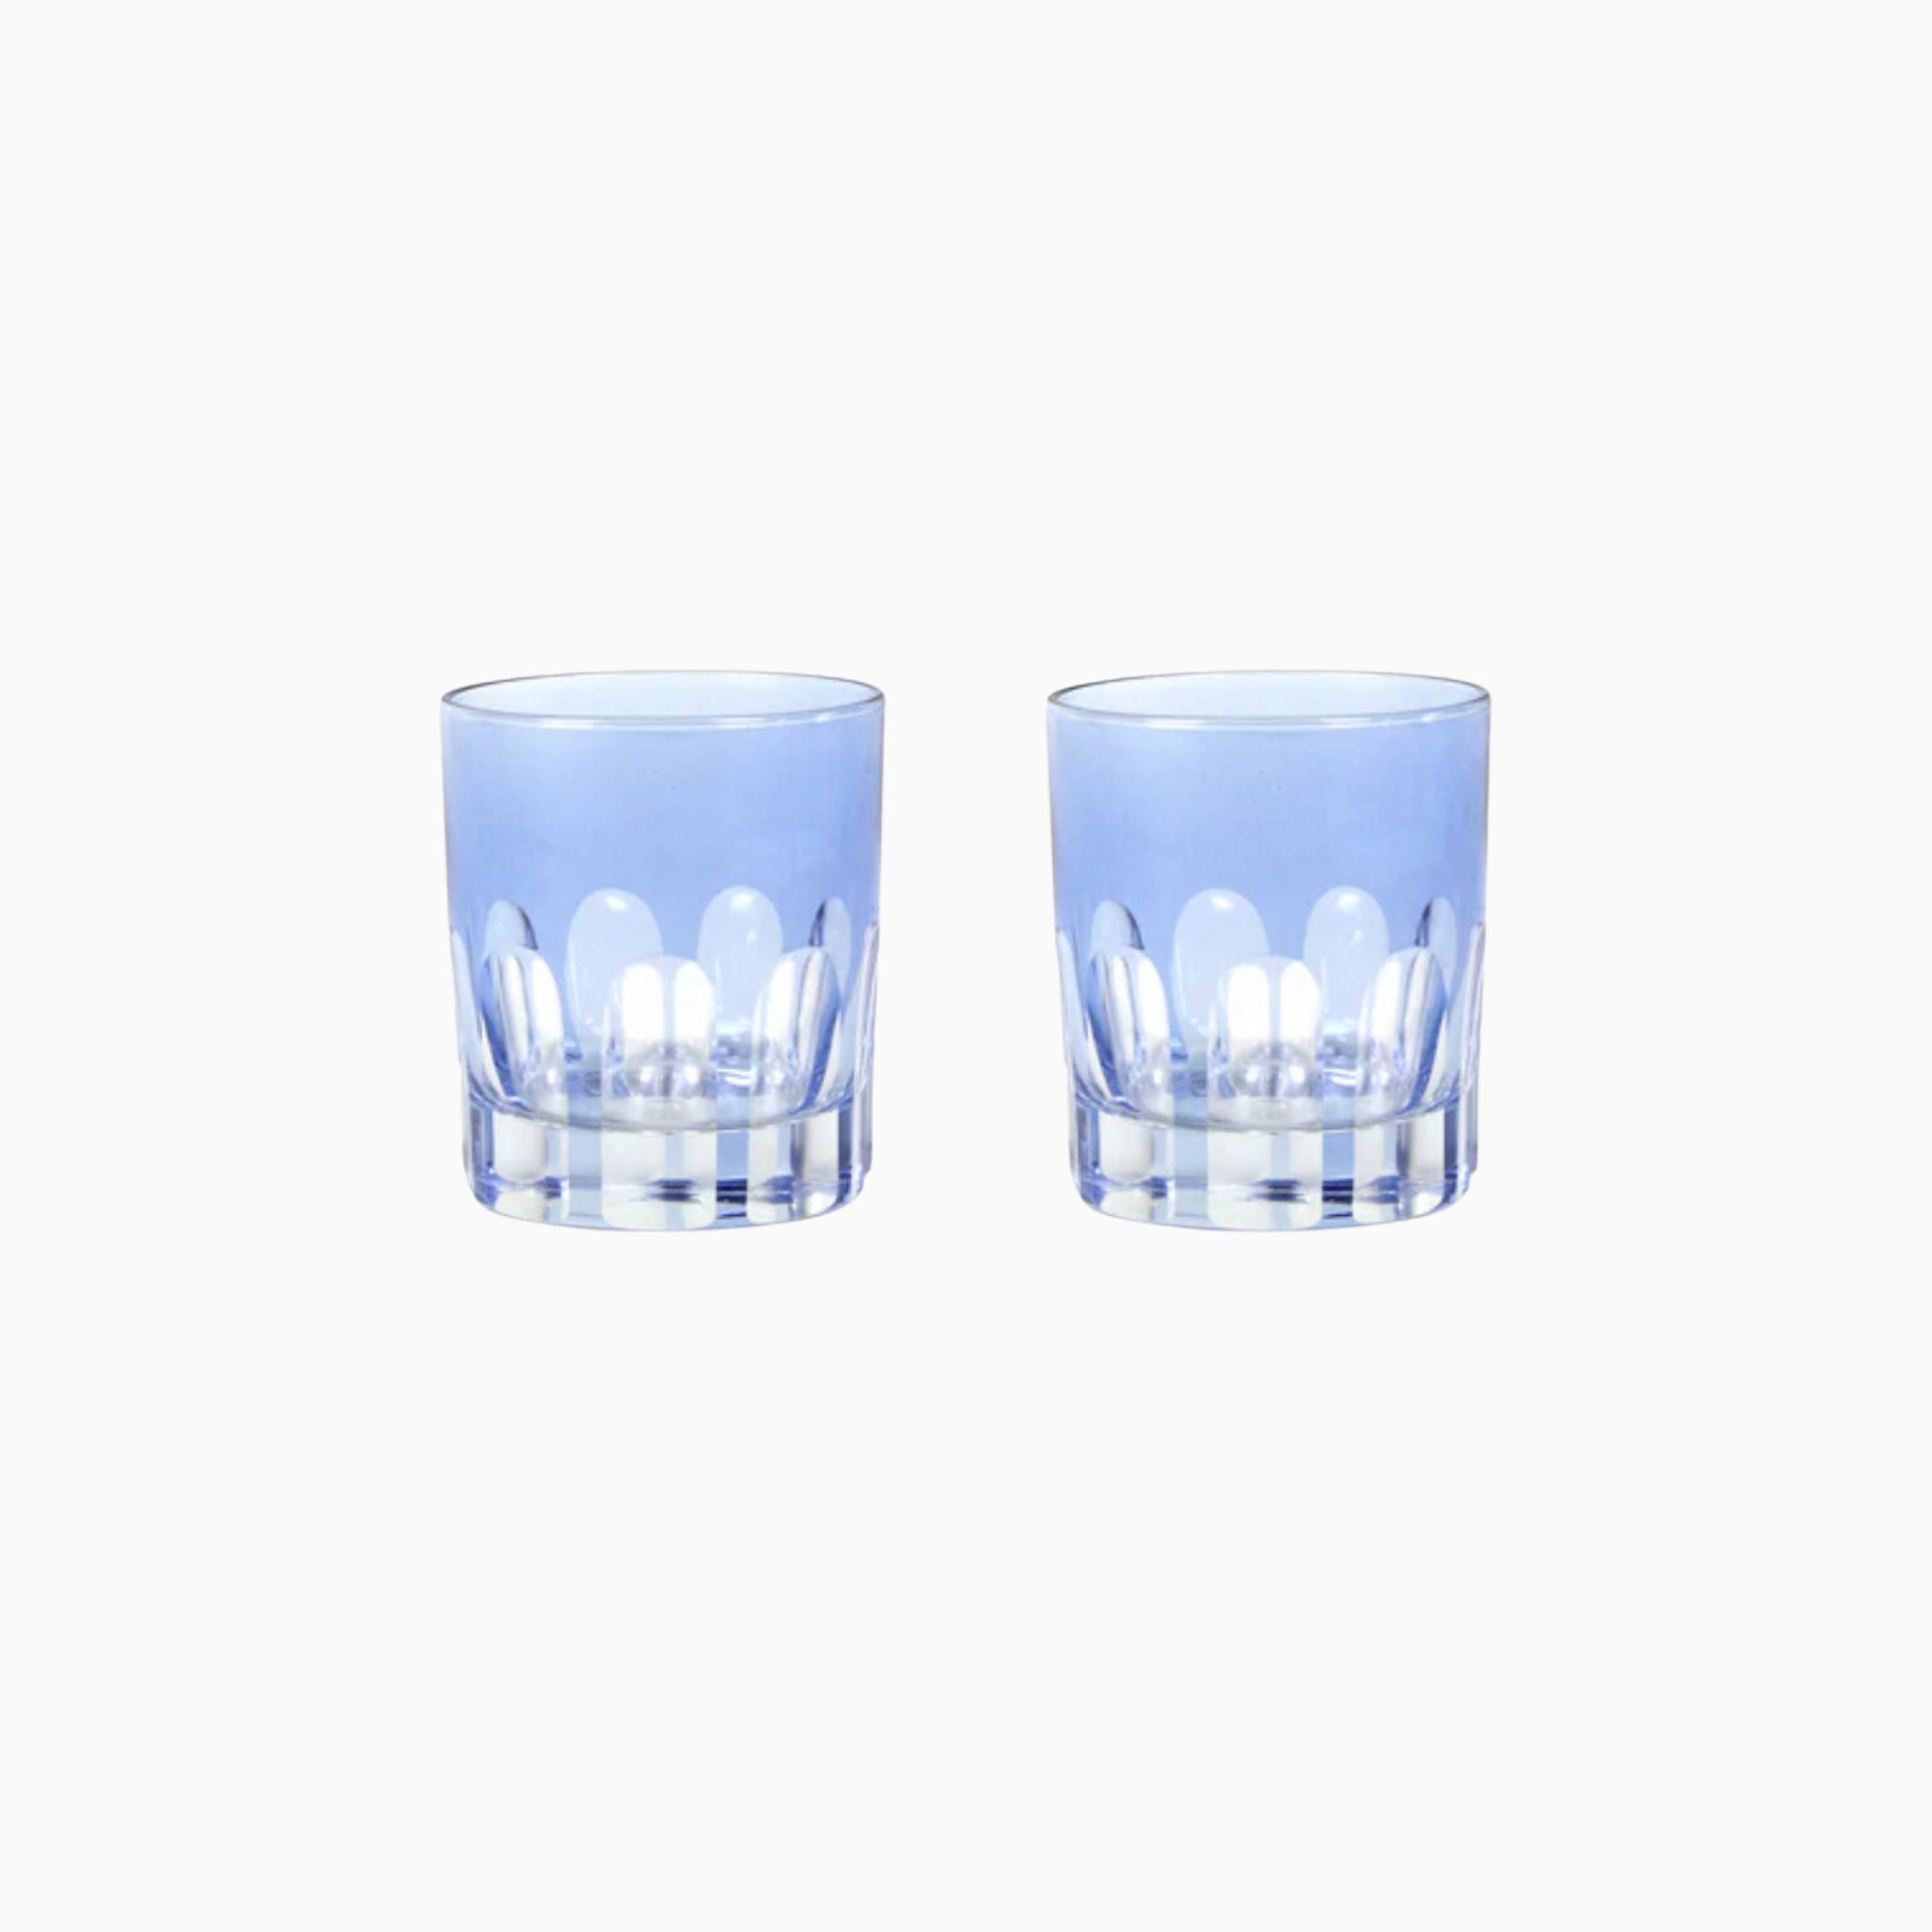 LIGHT BLUE / RIALTO GLASS - SET OF 2